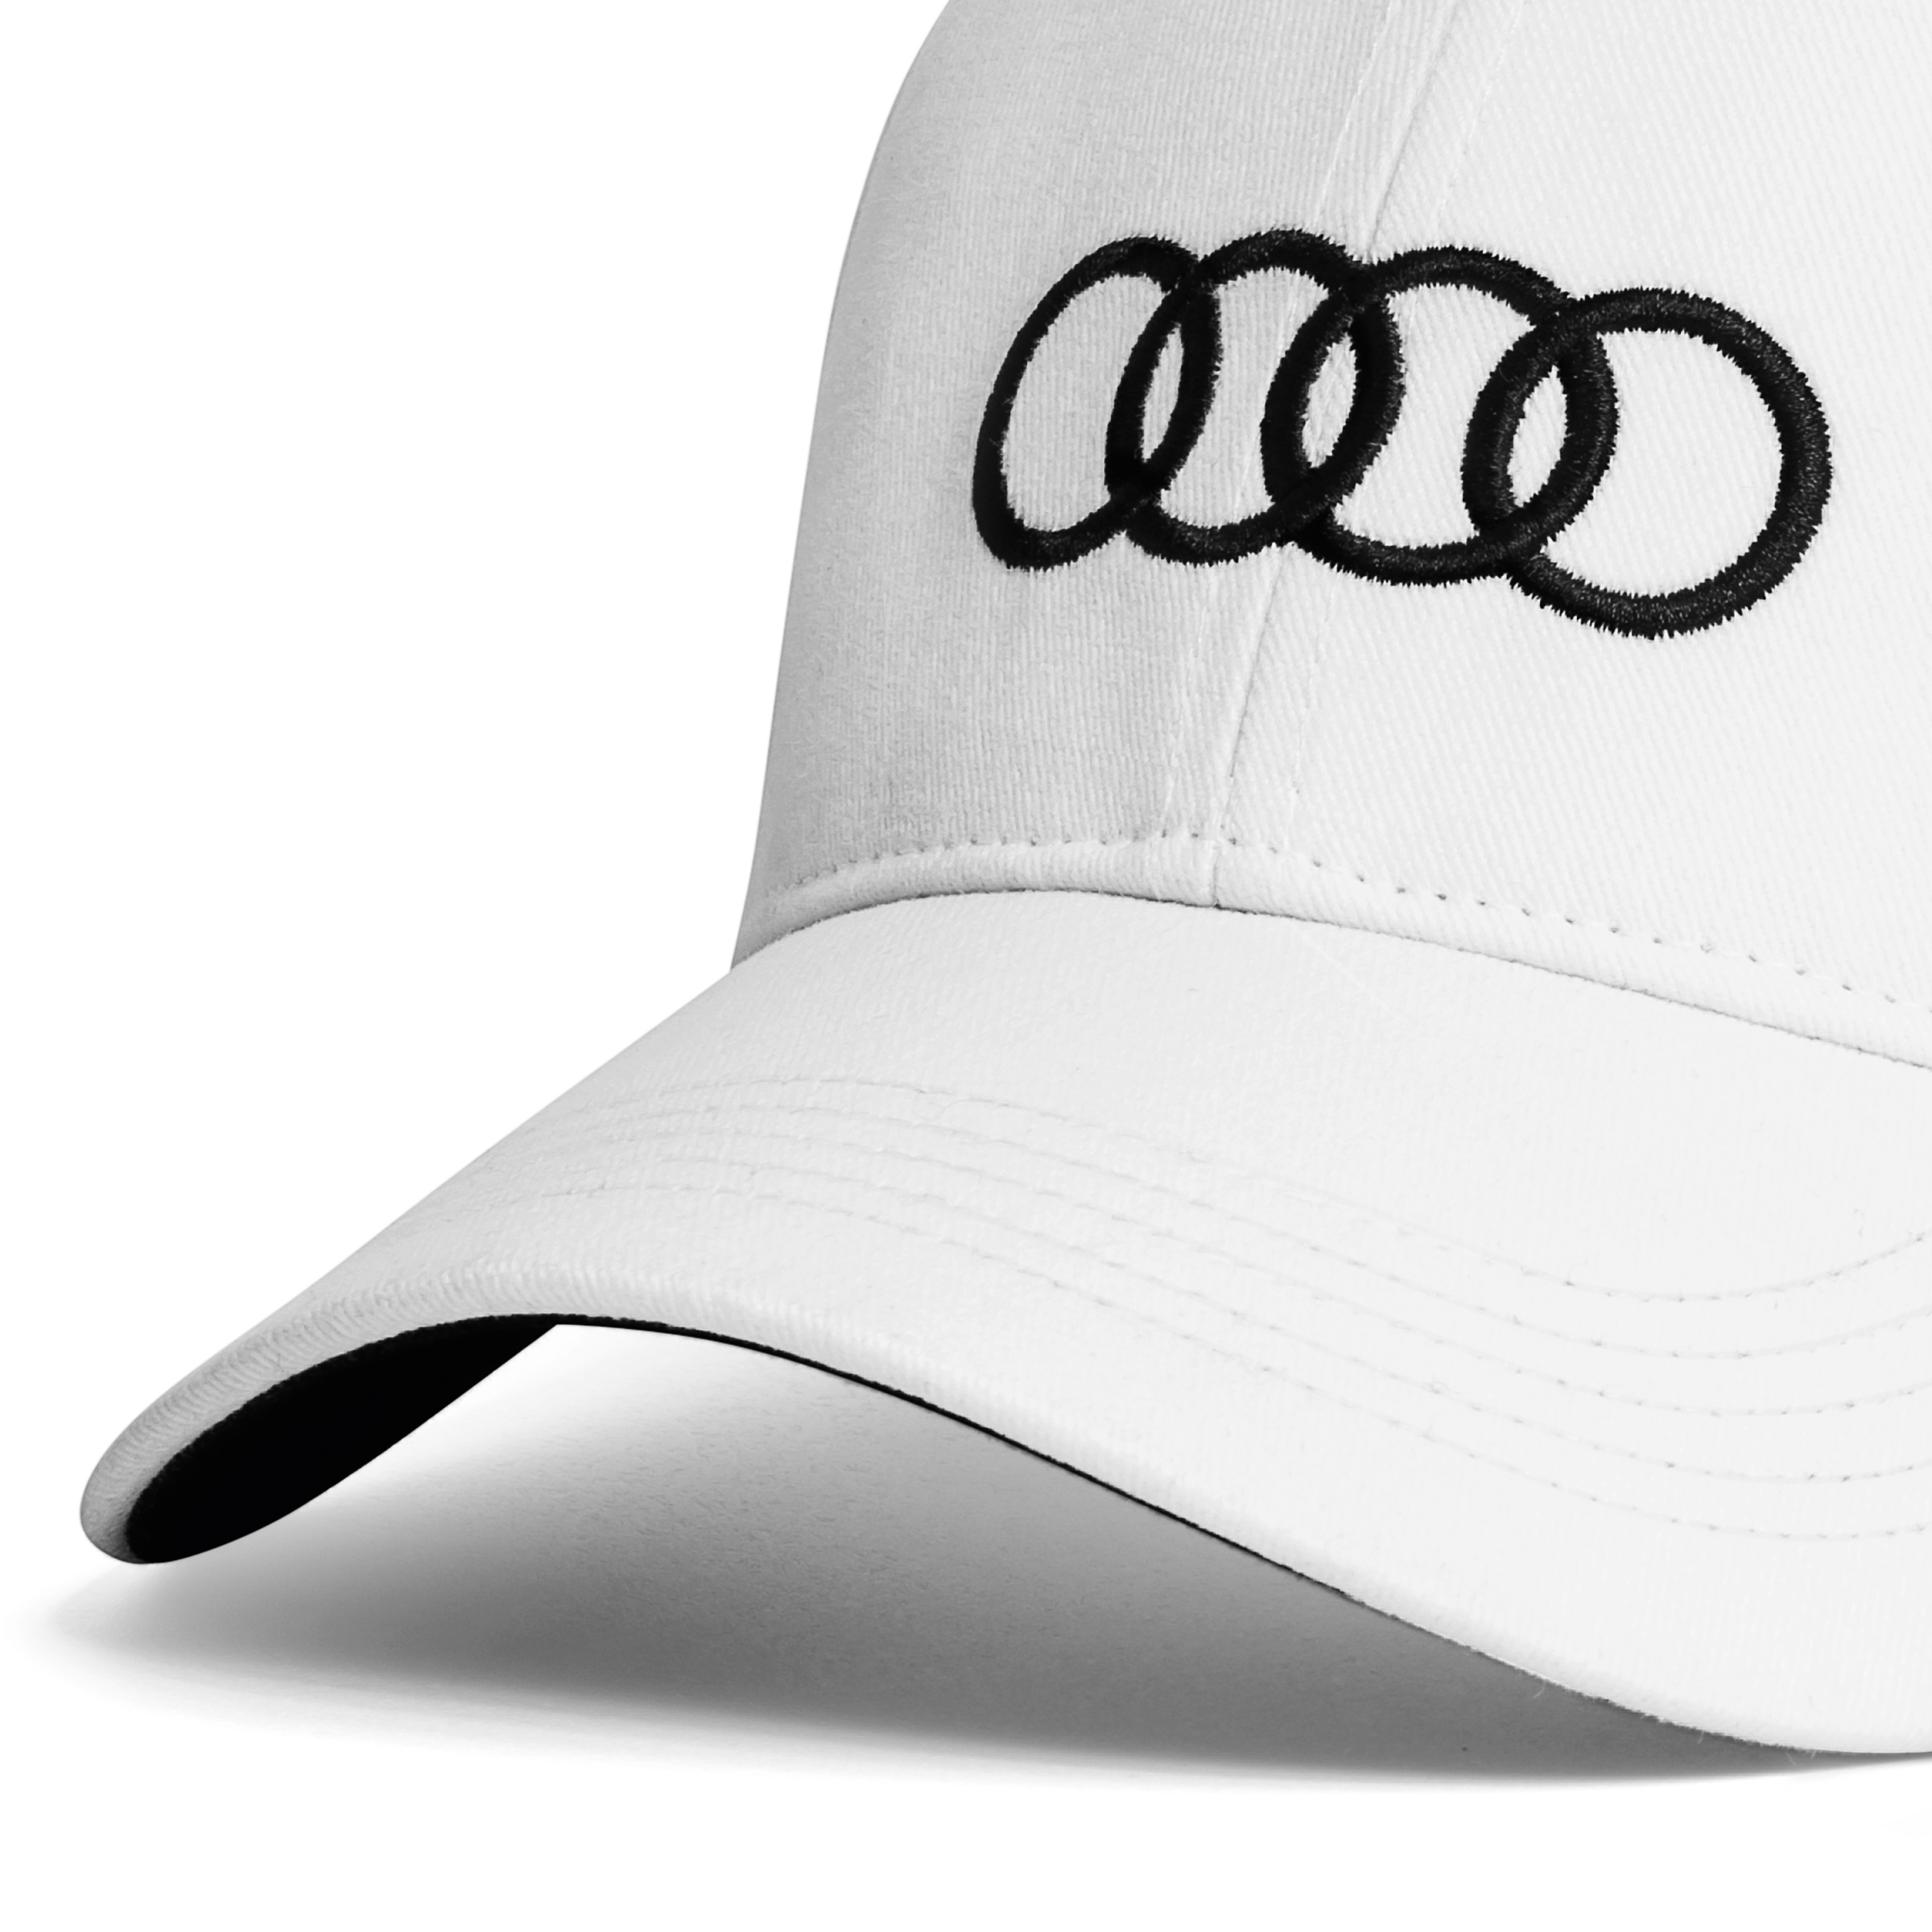 Audi Cap, weiß